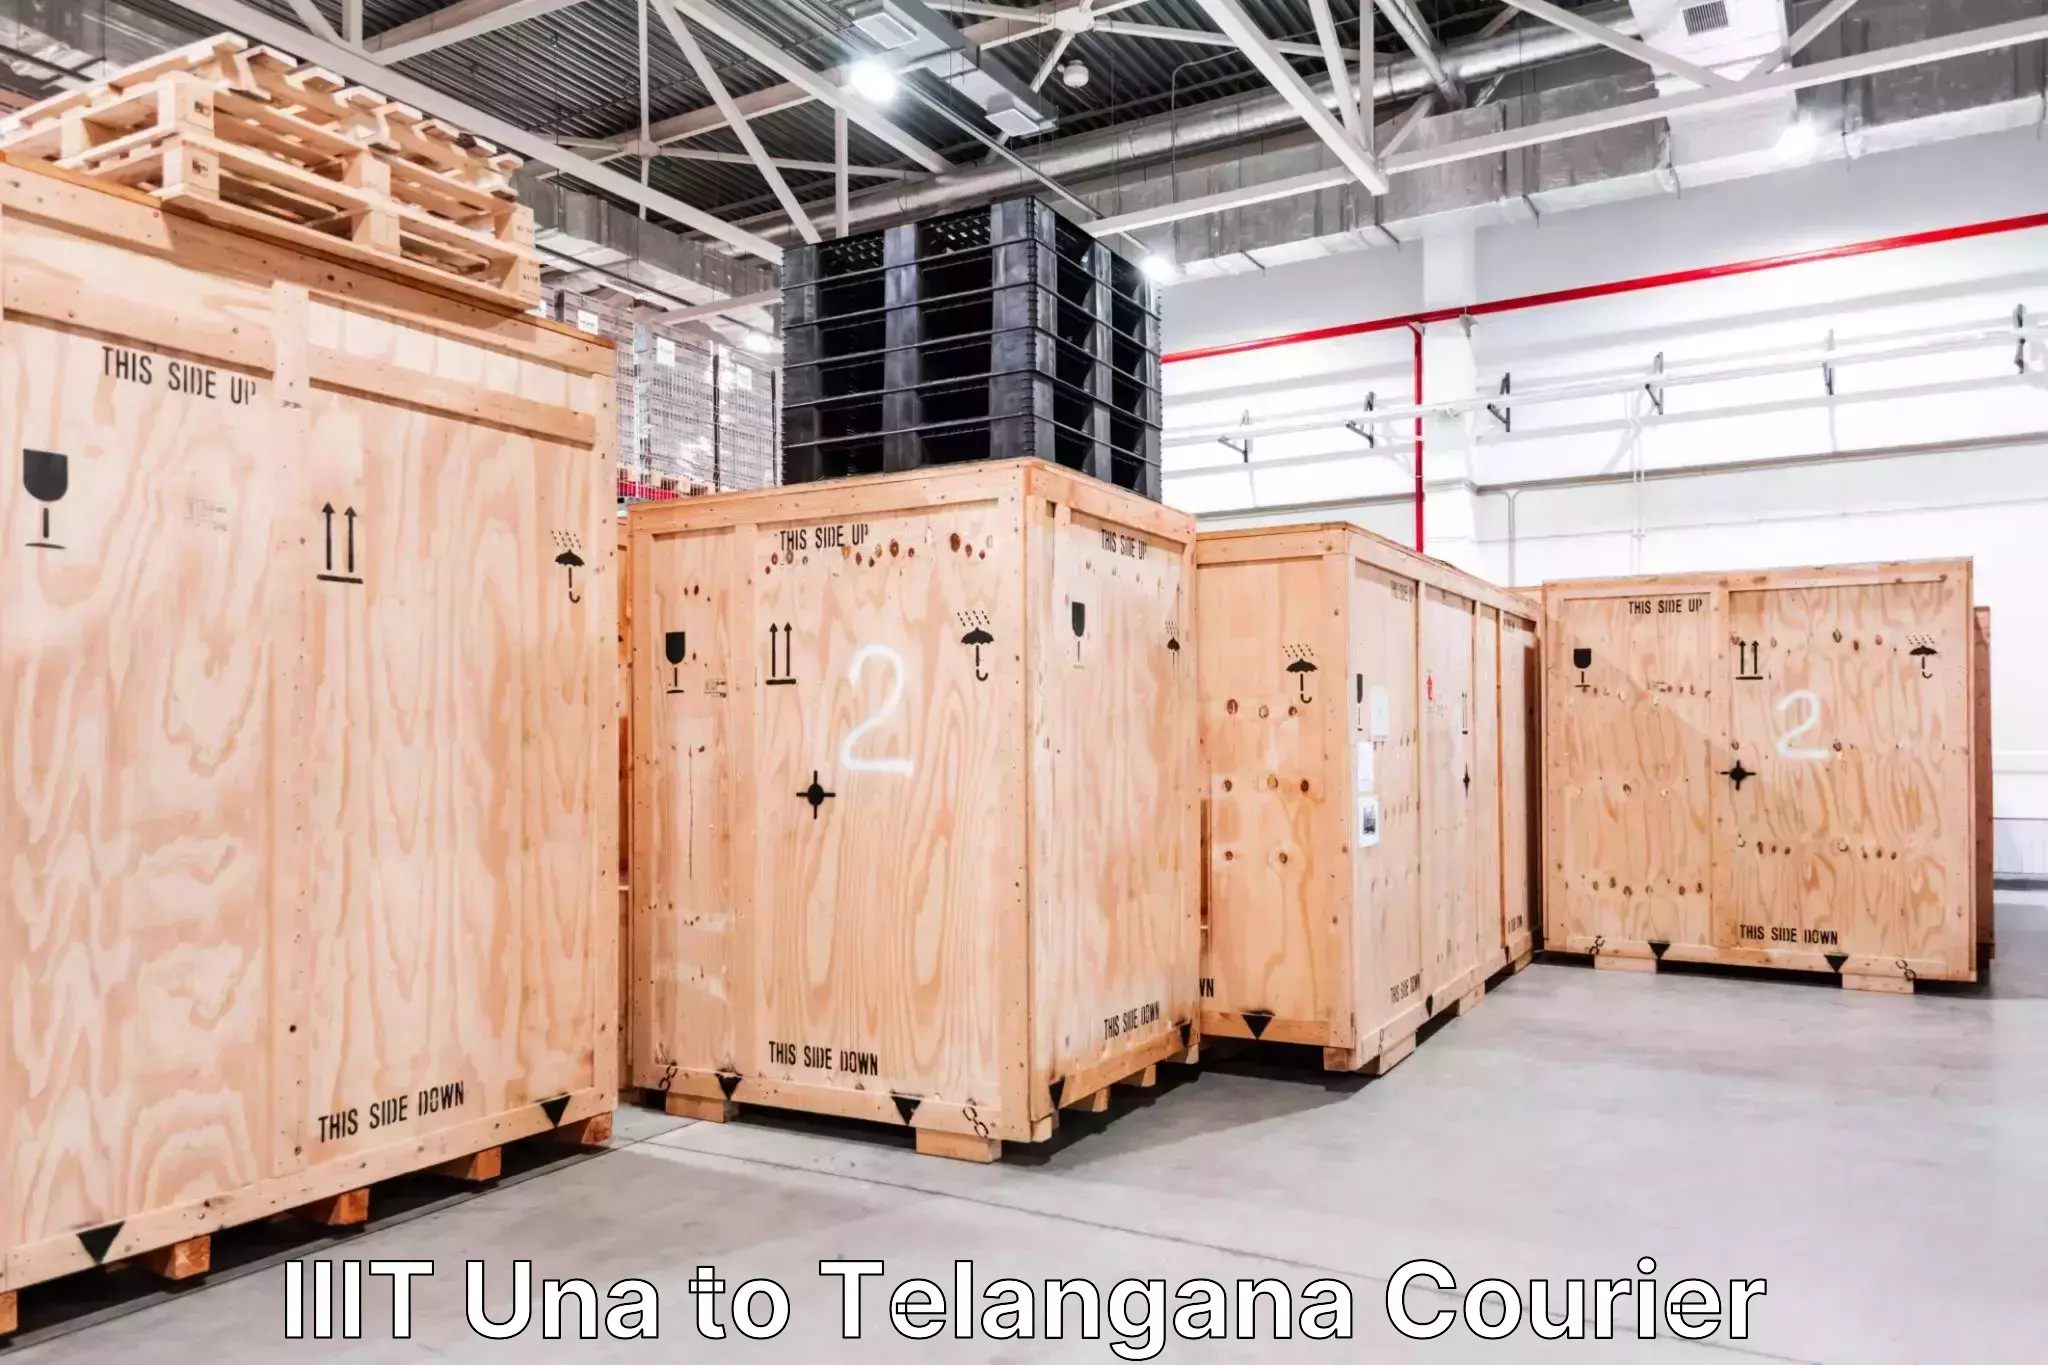 Luggage shipment strategy IIIT Una to Bonakal